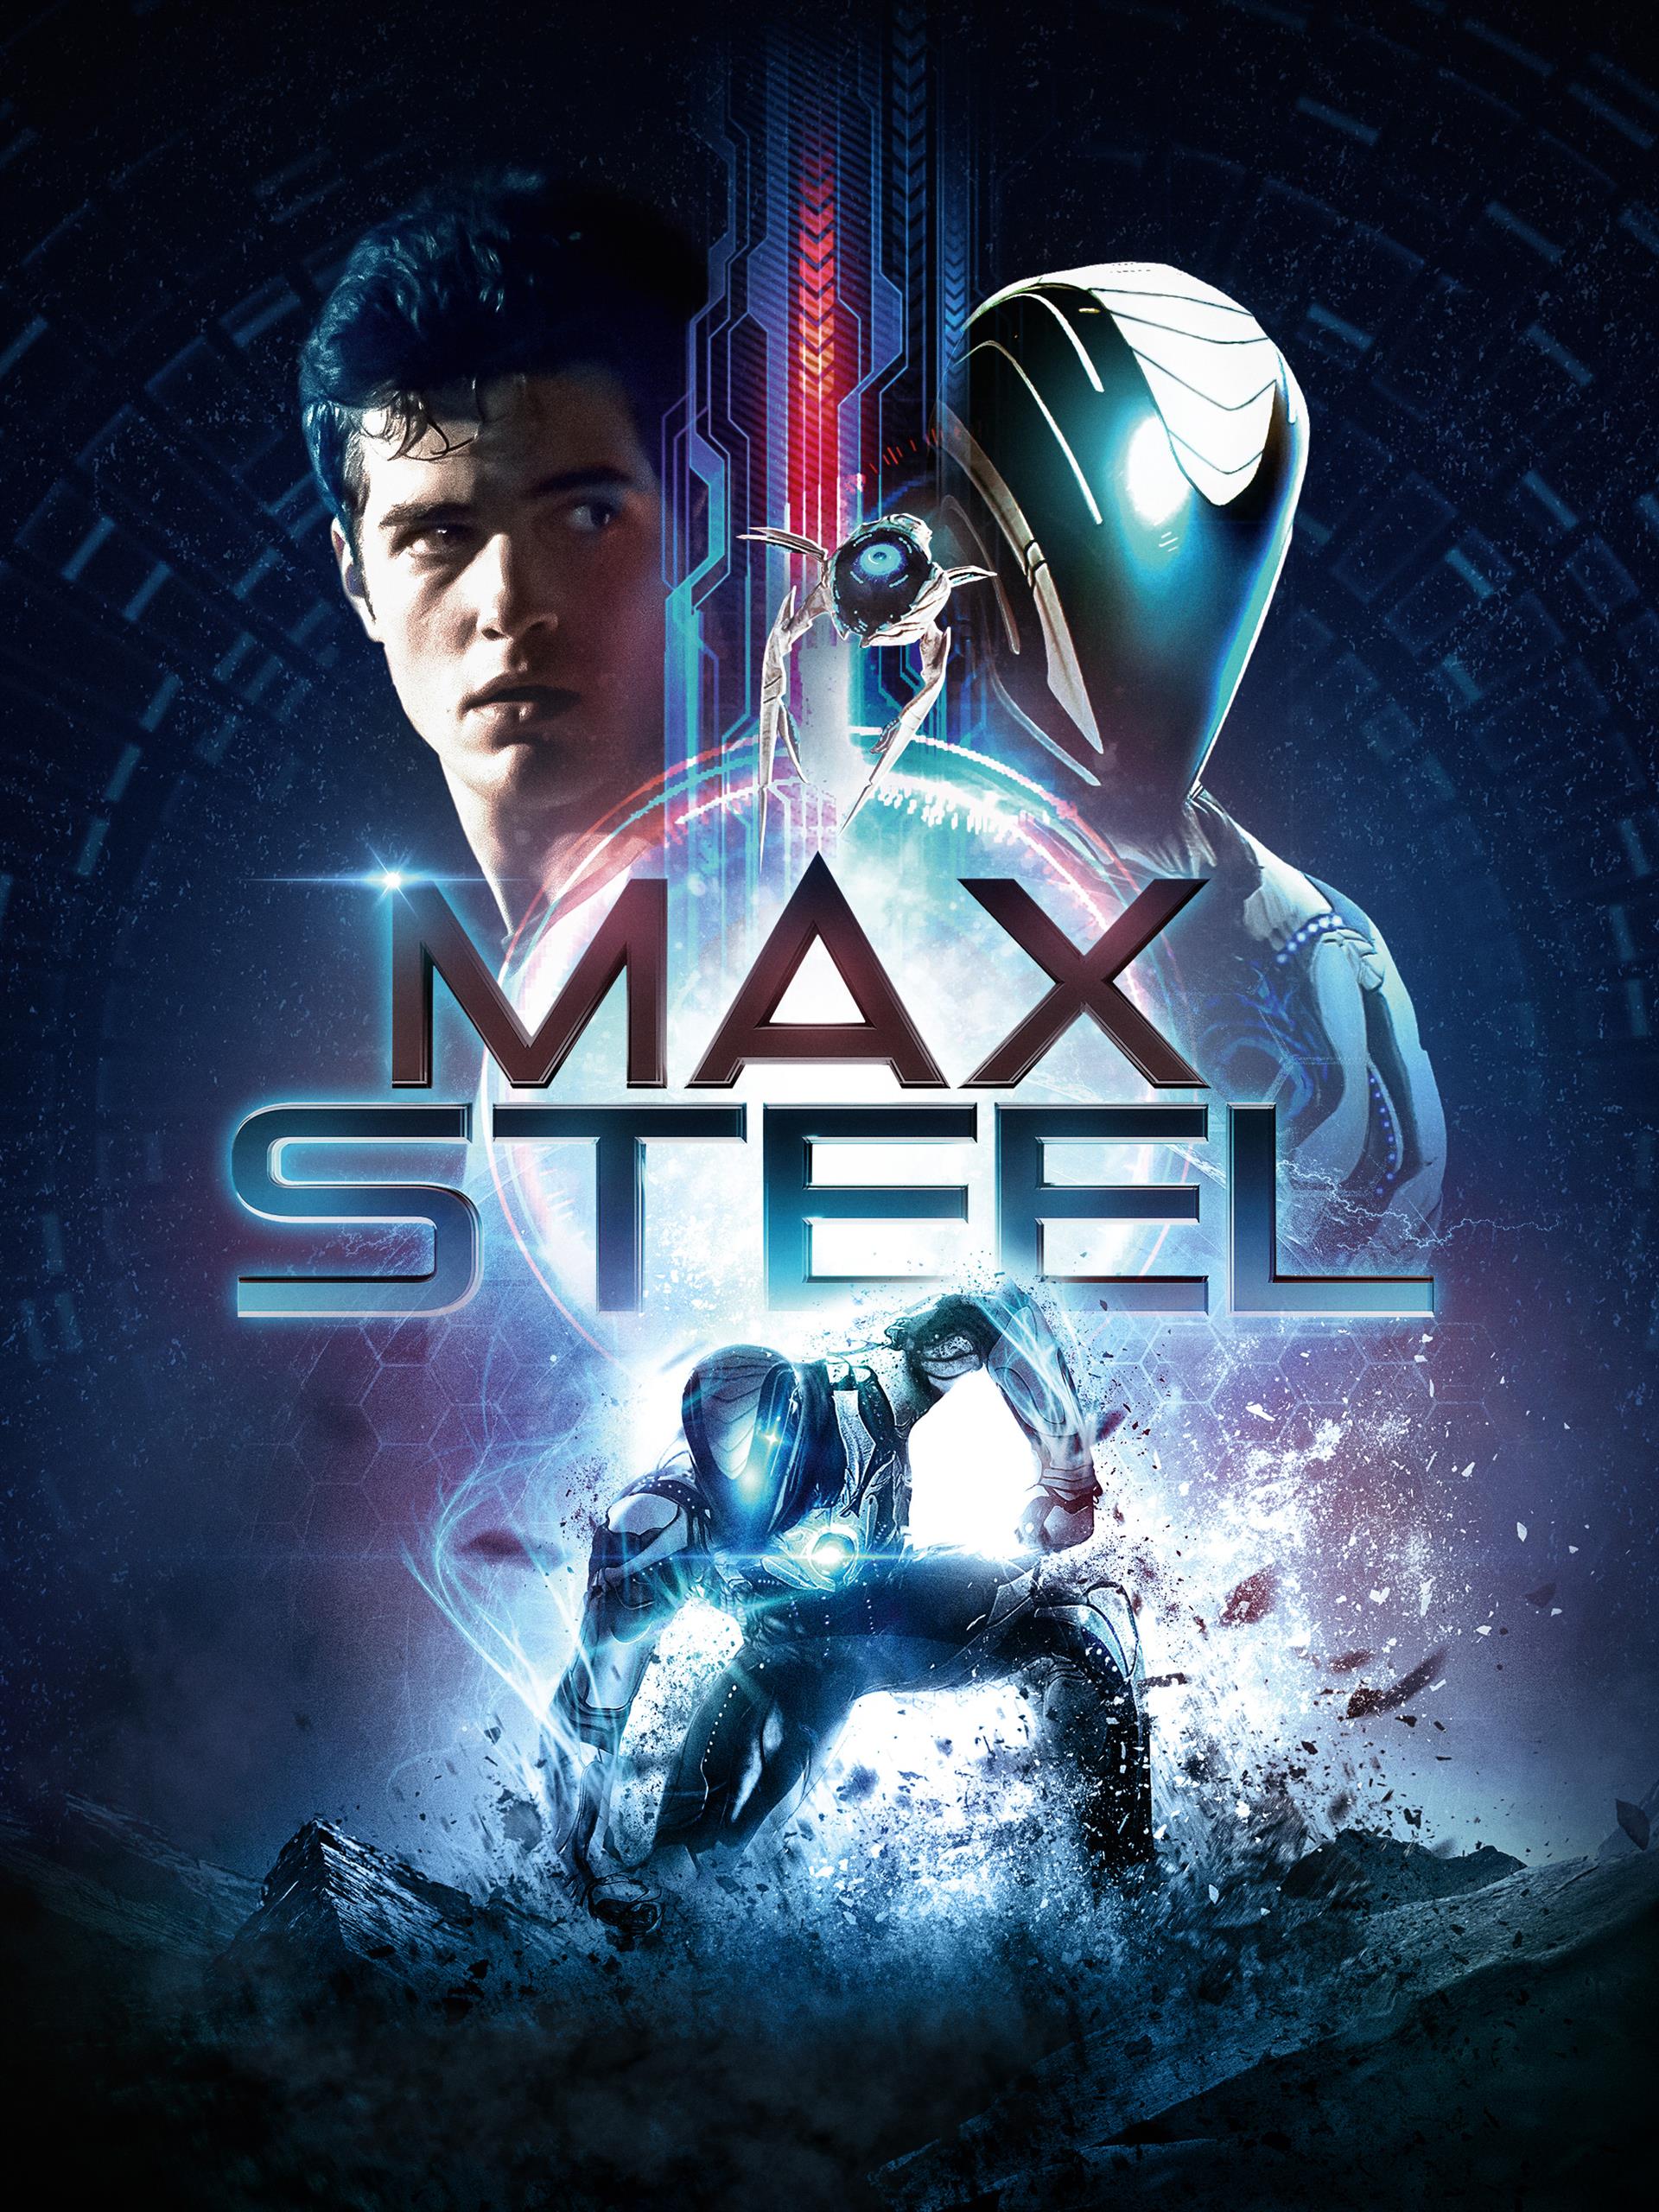 Max.Steel.2016.HUN.BDRiP.x264-Gianni